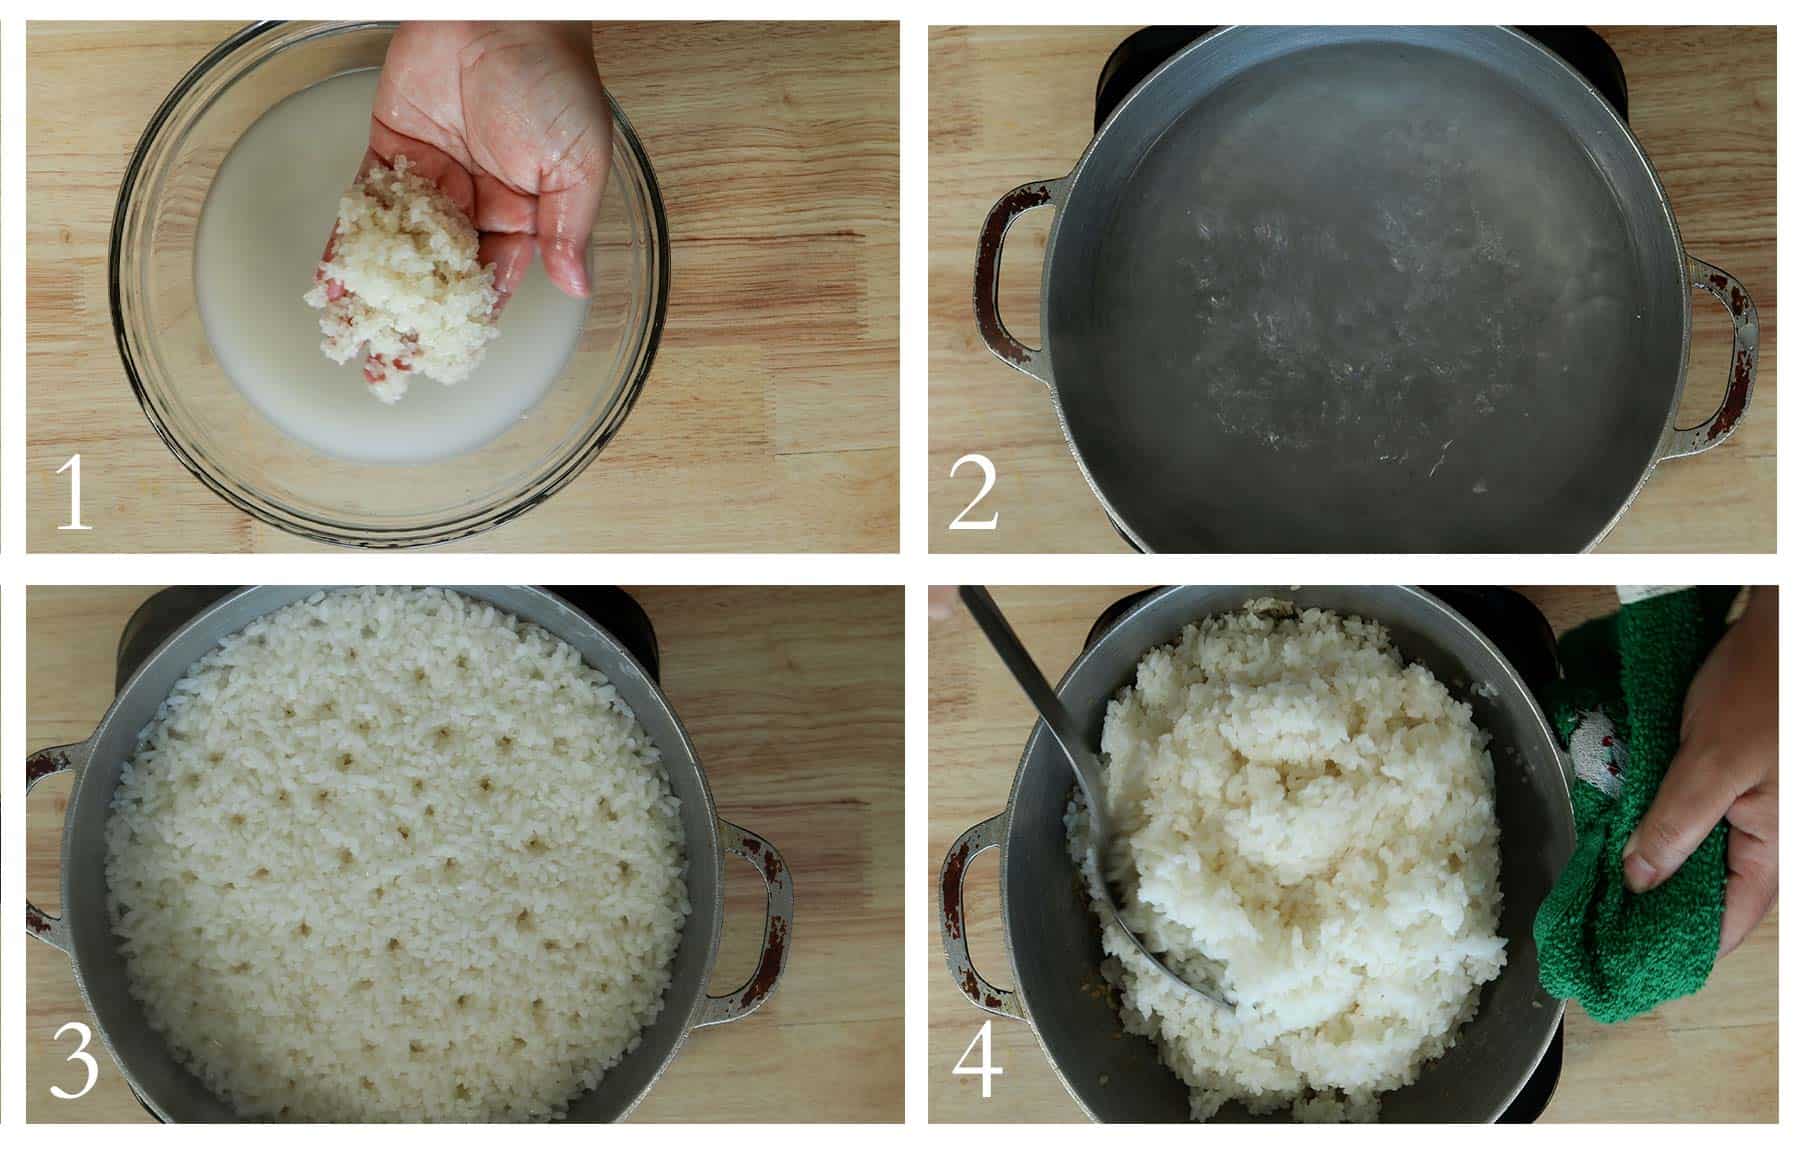 imagenes de los pasos a seguir para cocinar arroz blanco.